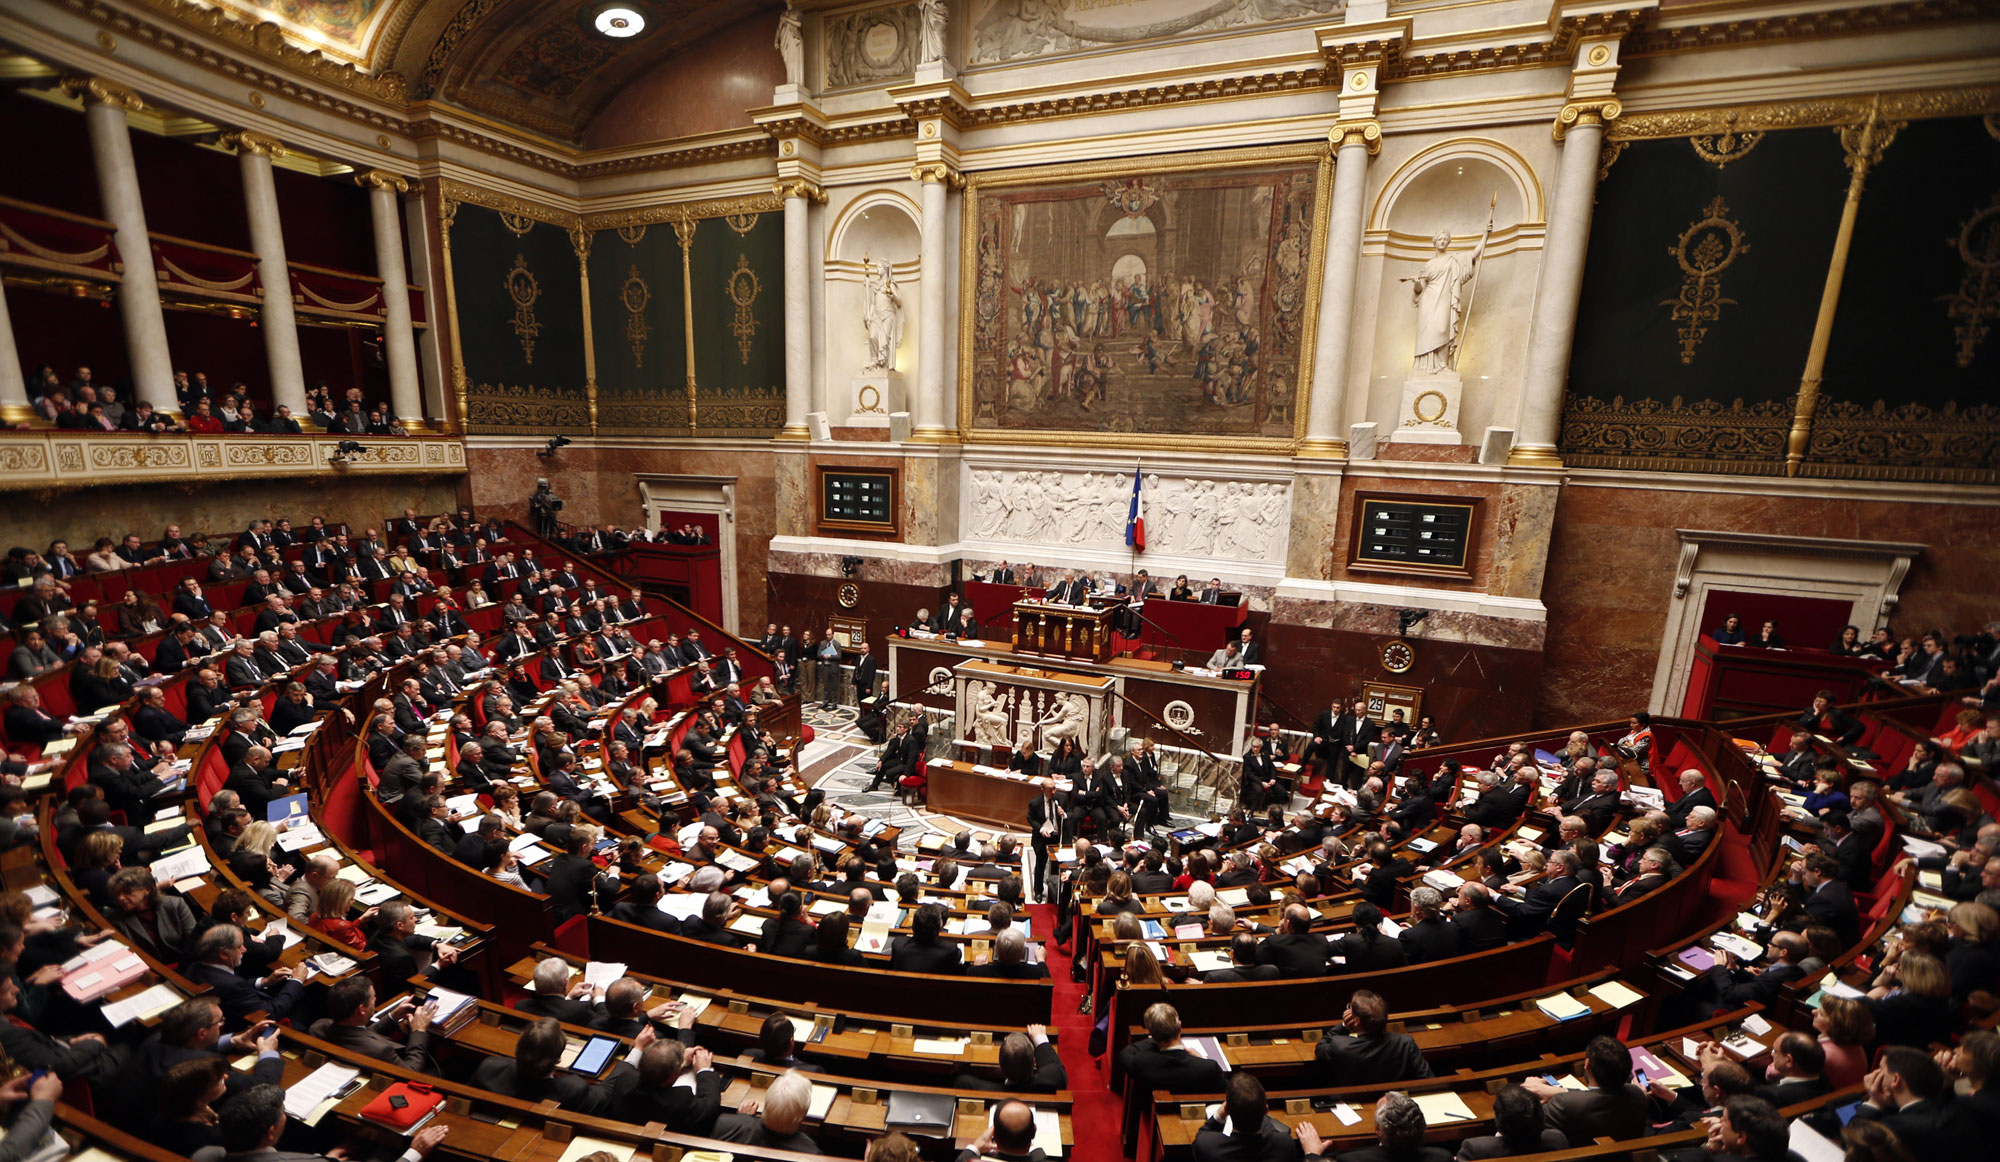 Les députés ce sont des hommes et des femmes, des citoyens français âgés de plus de 18 ans. Ils siègent à l'Assemblée nationale.